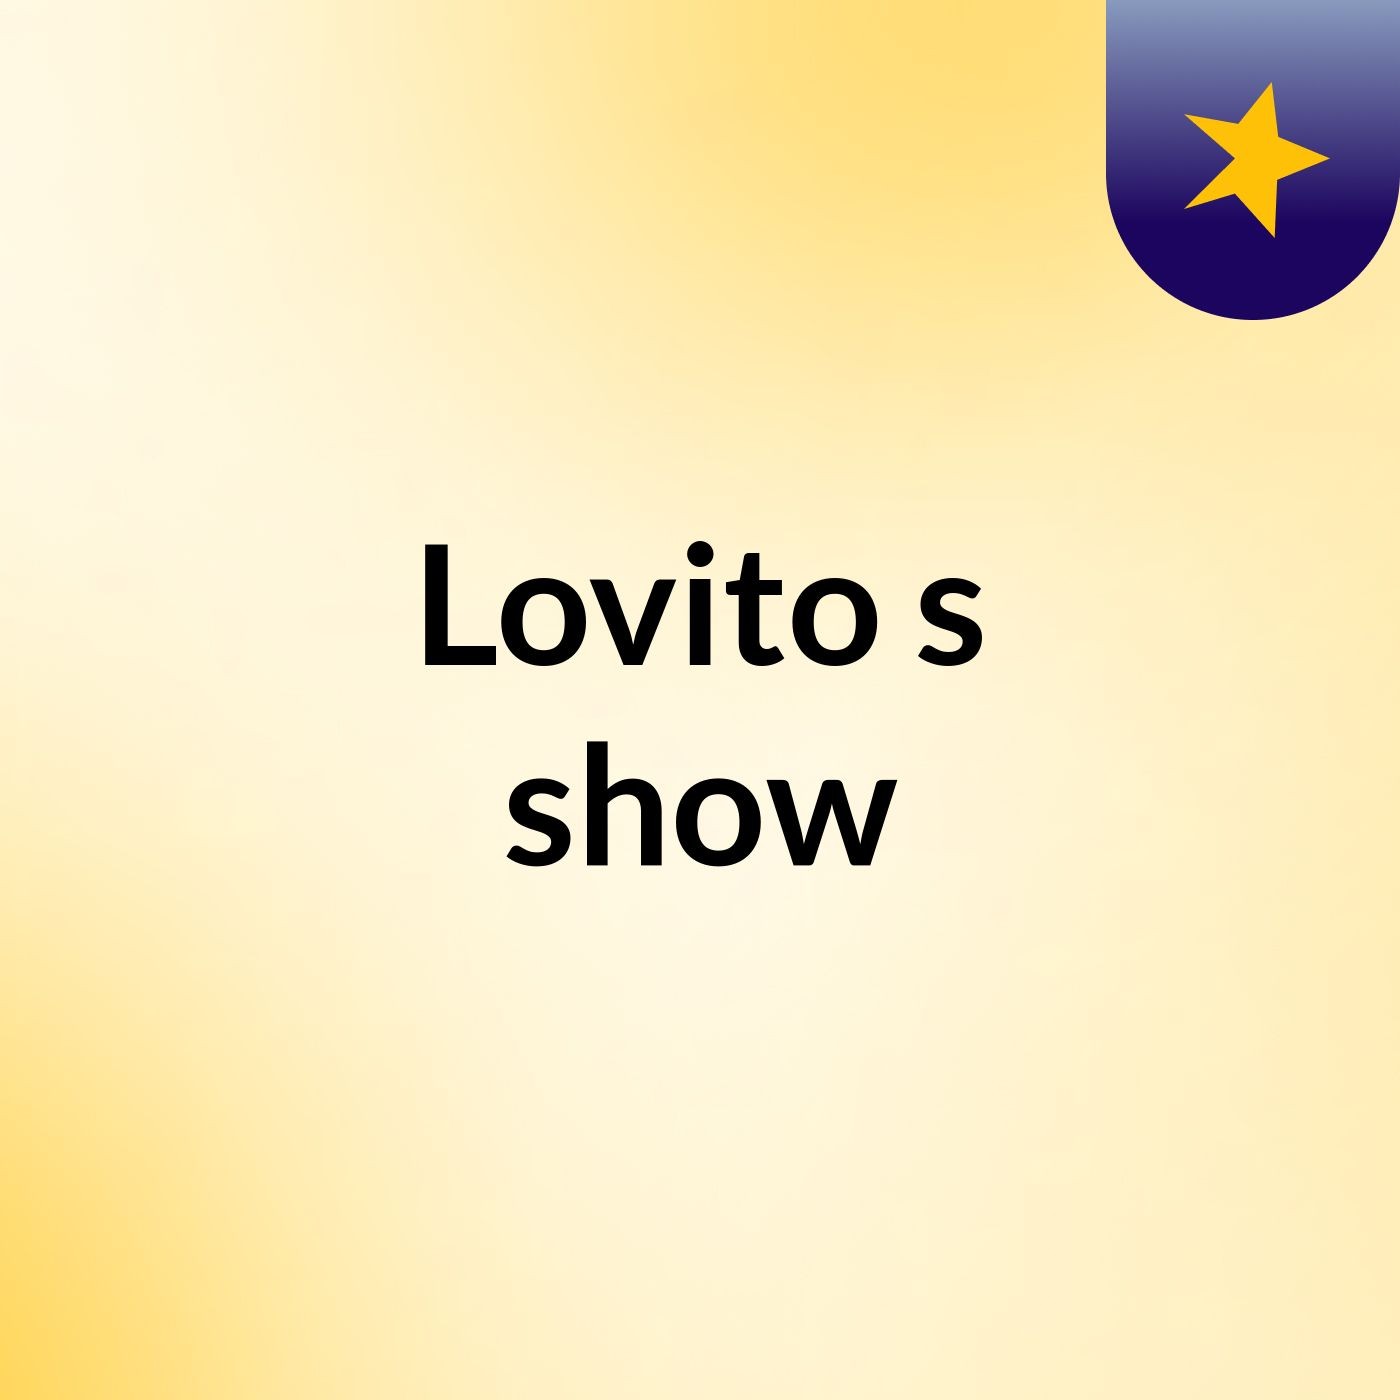 Lovito's show